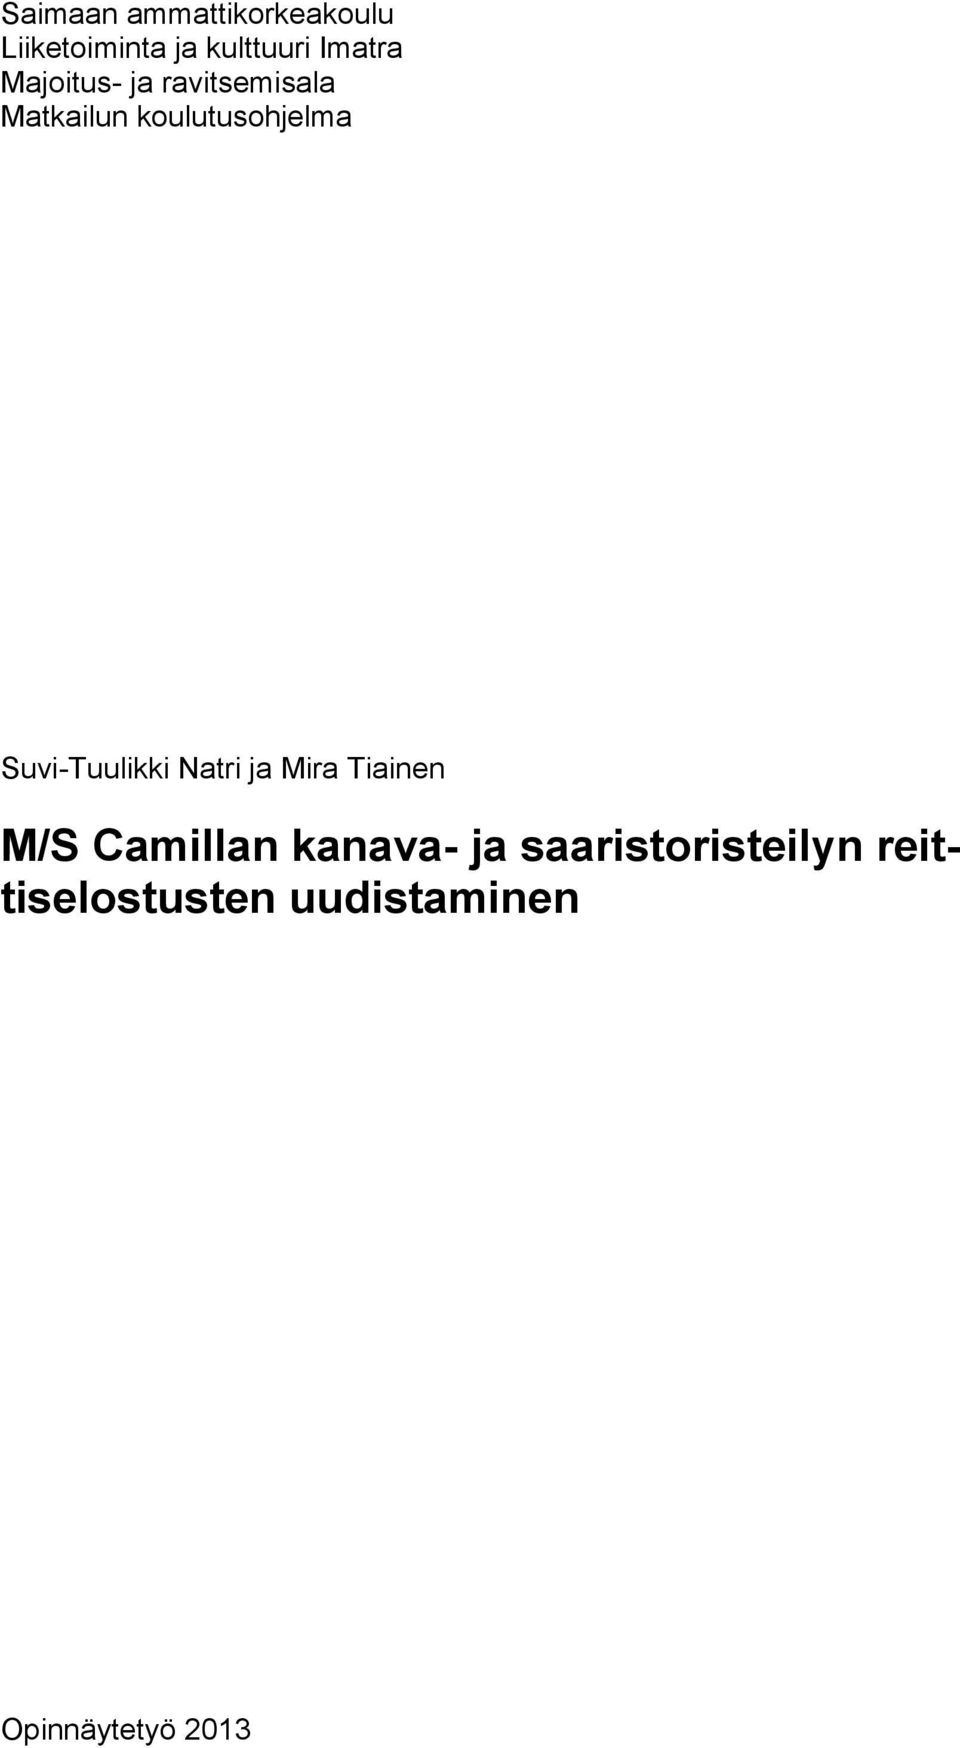 Suvi-Tuulikki Natri ja Mira Tiainen M/S Camillan kanava- ja